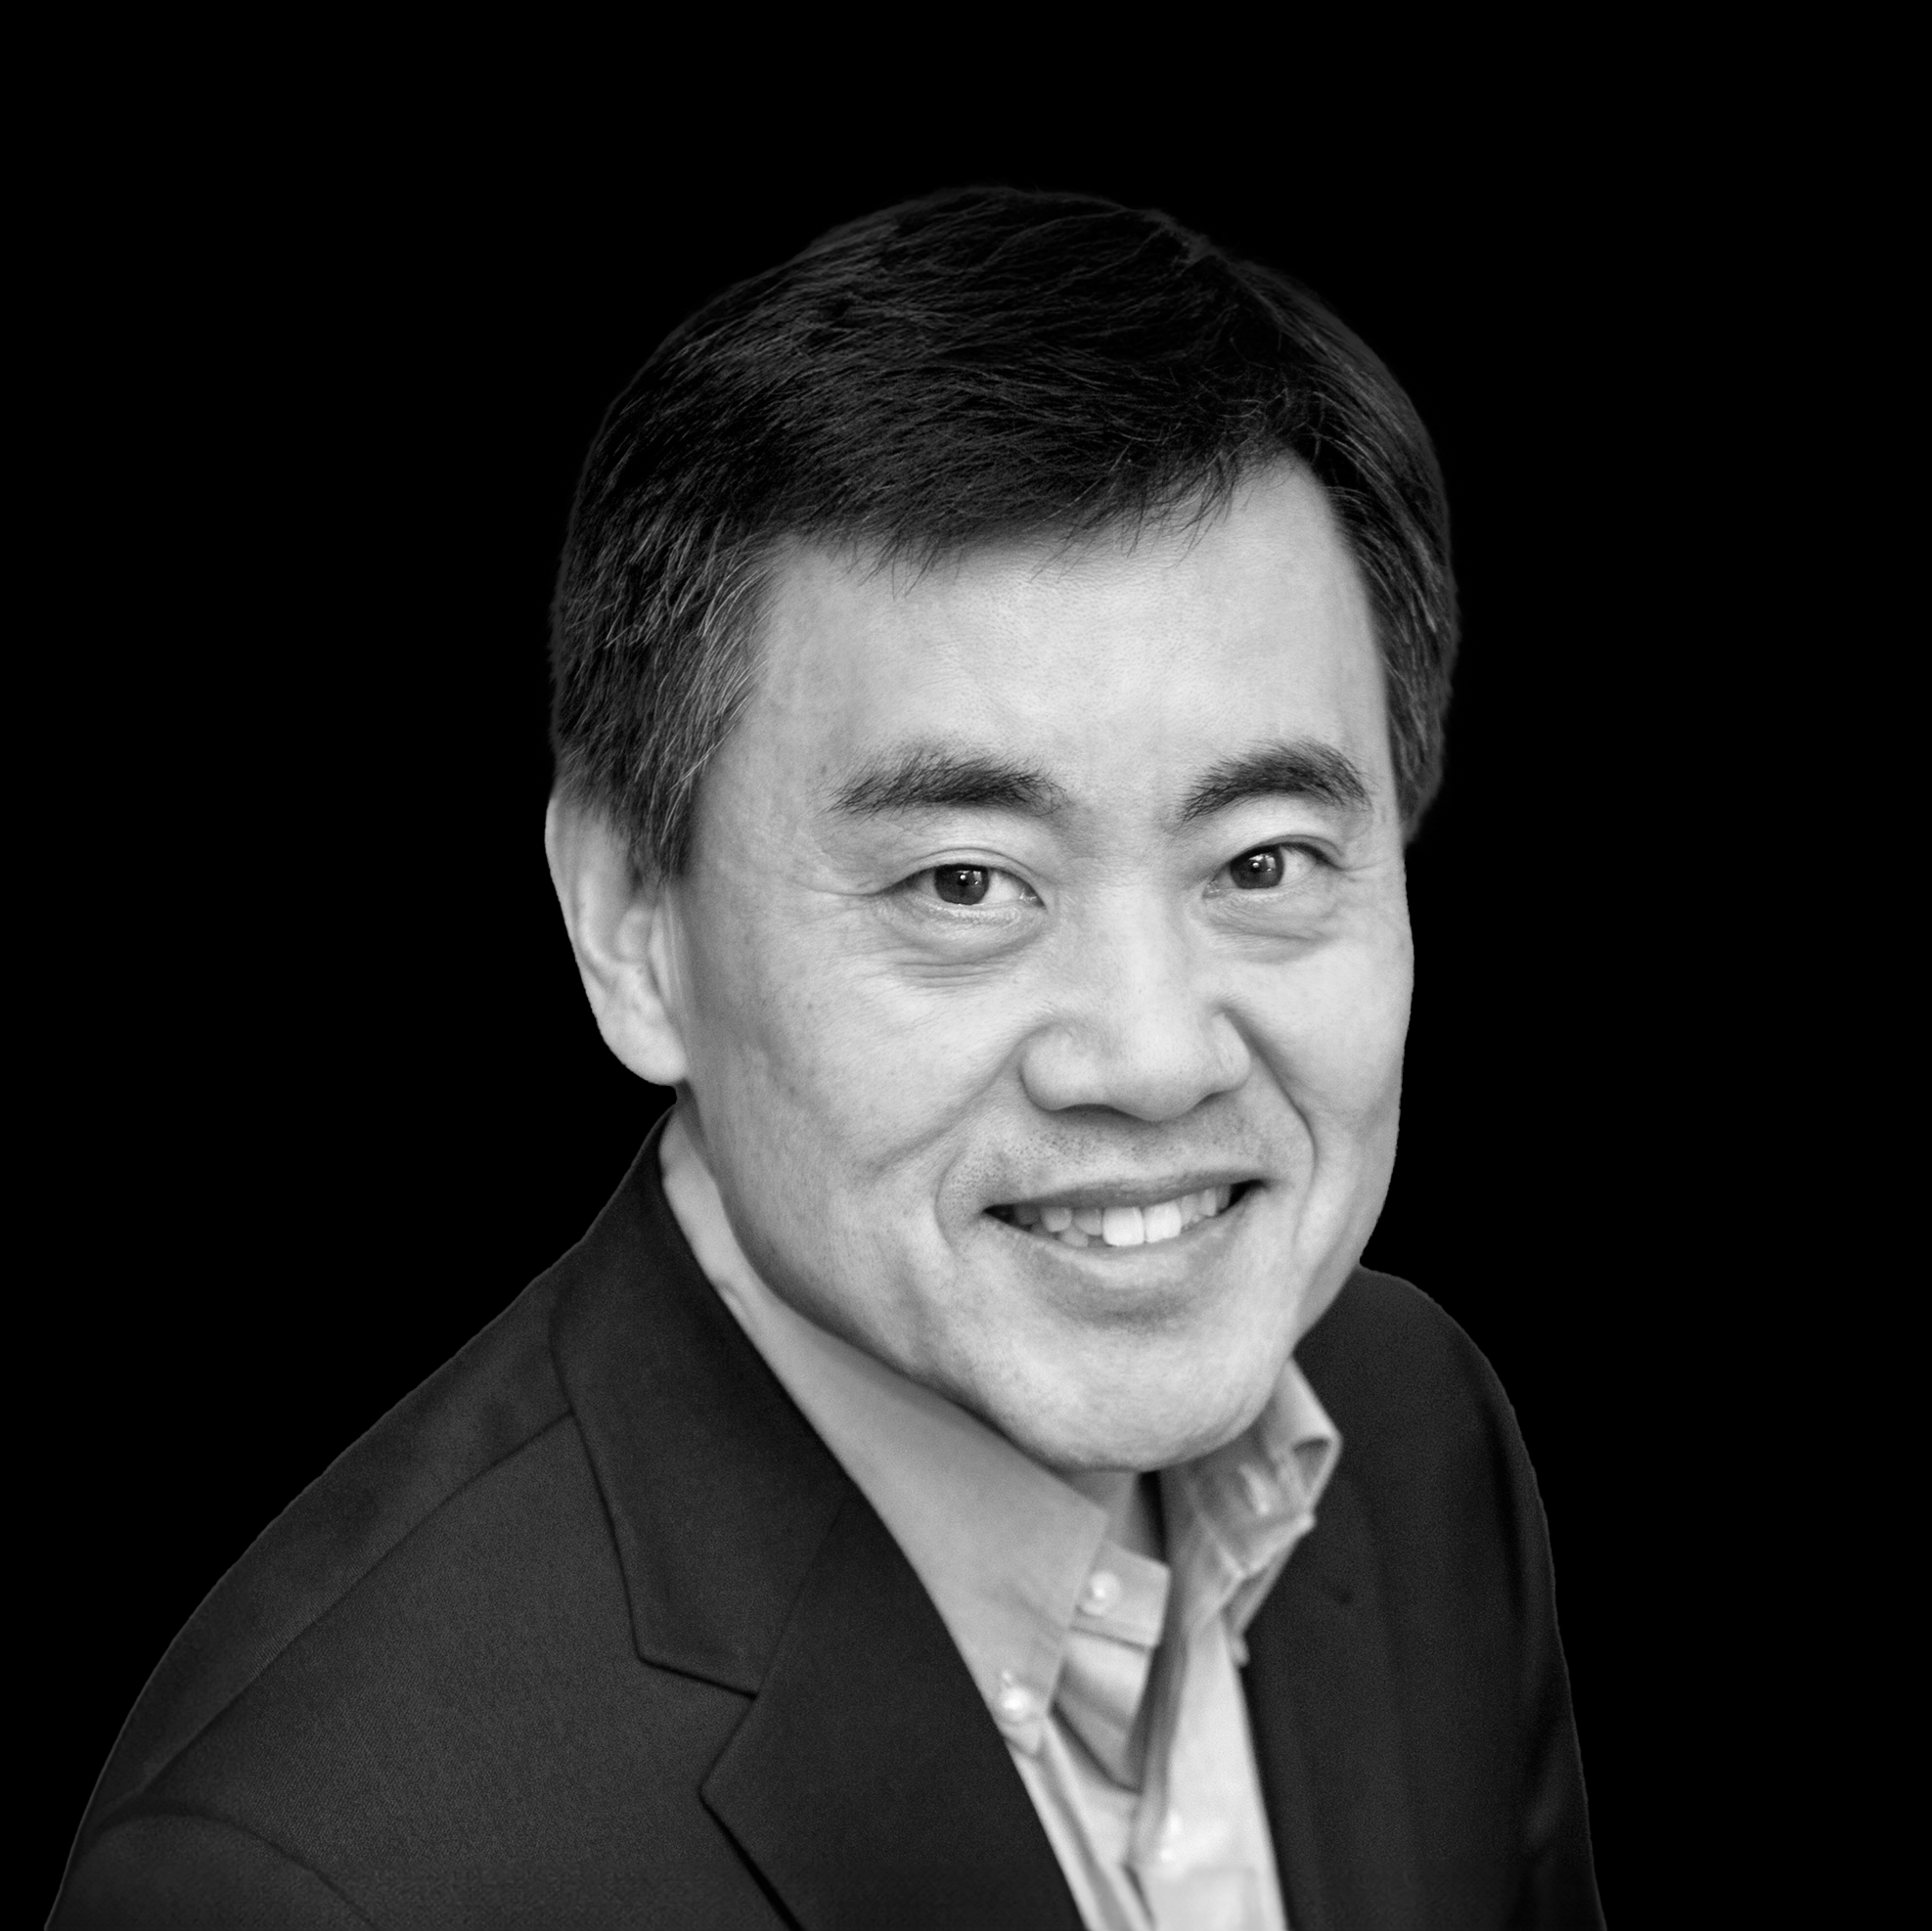 Jimmy Wang, PhD